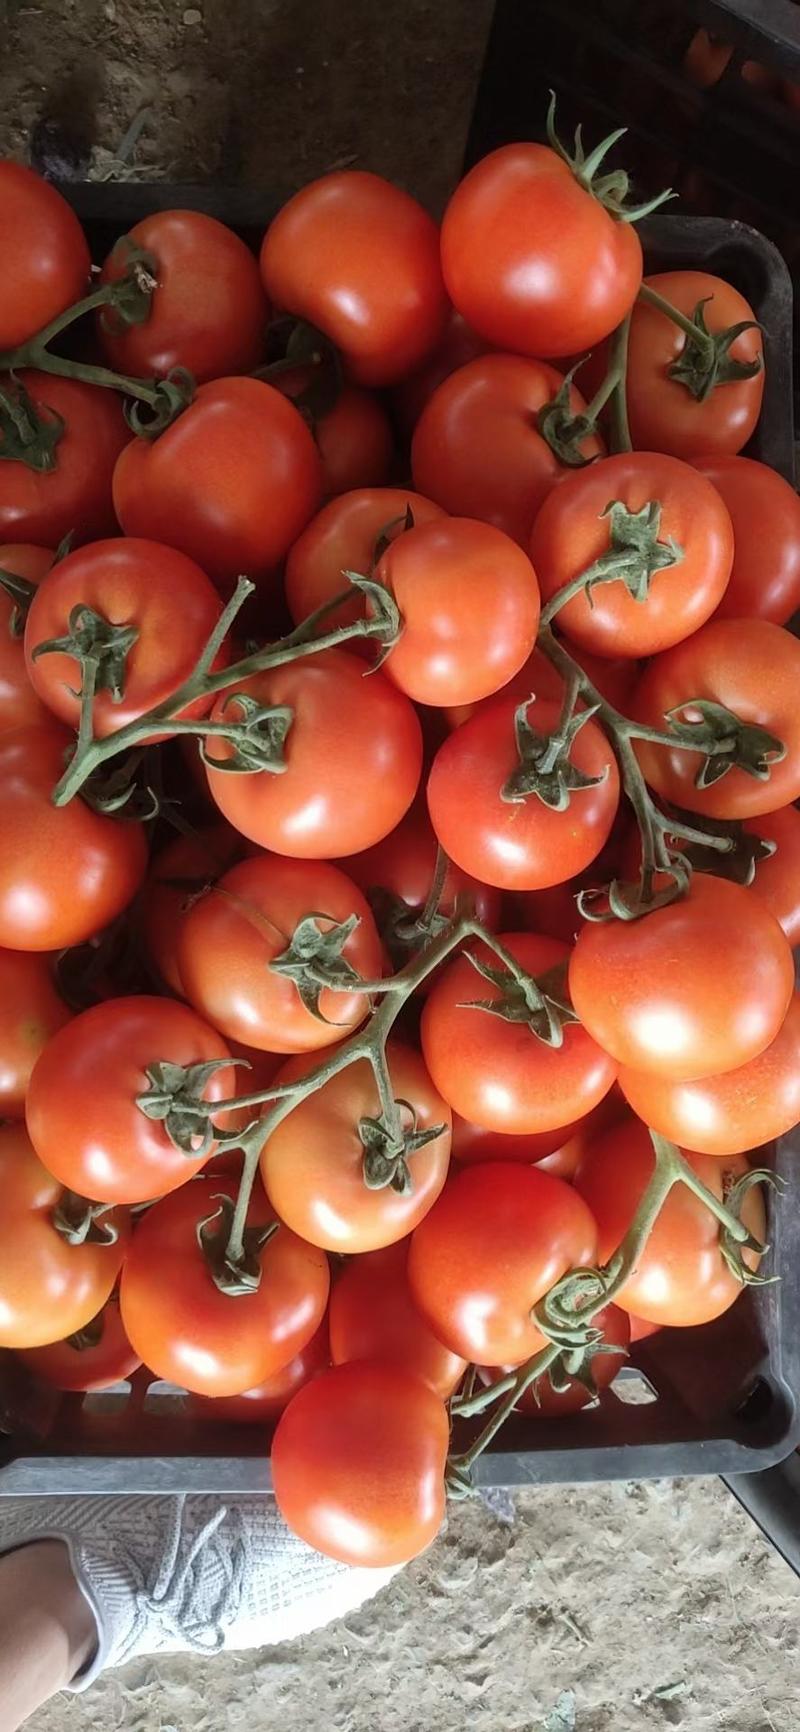 西红柿快上市了。！需要的老板可以提前预订。早定好货多多